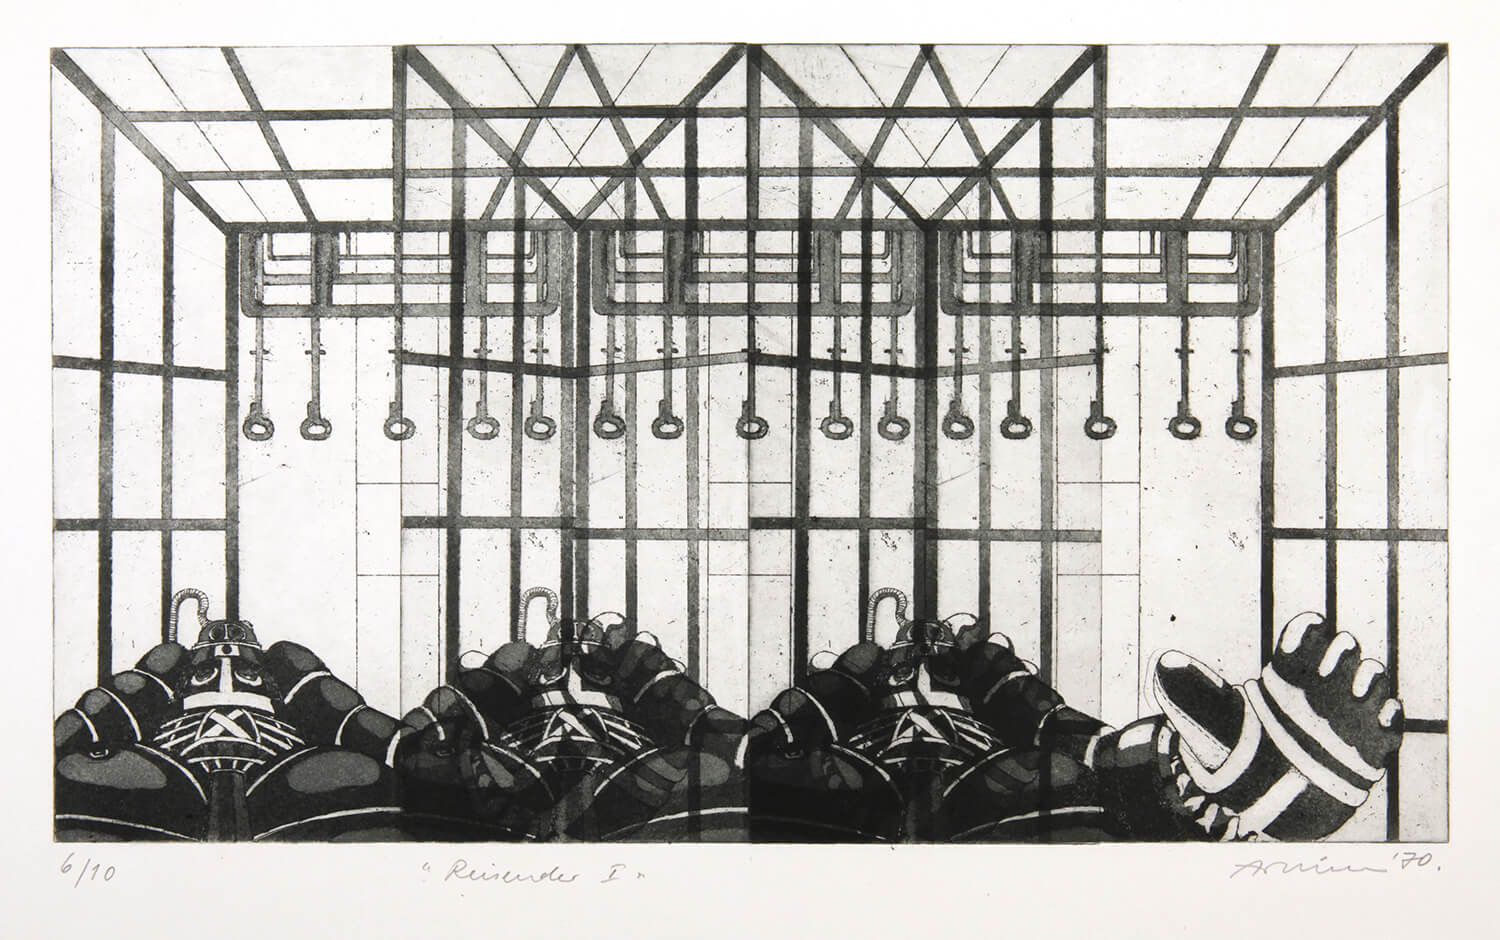 Bettina von Arnim, Reisende I, 1970, Radierung, Auflage: 10, 22,5 x39,5 cm (nur als Mappe mit 4 Radierungen)